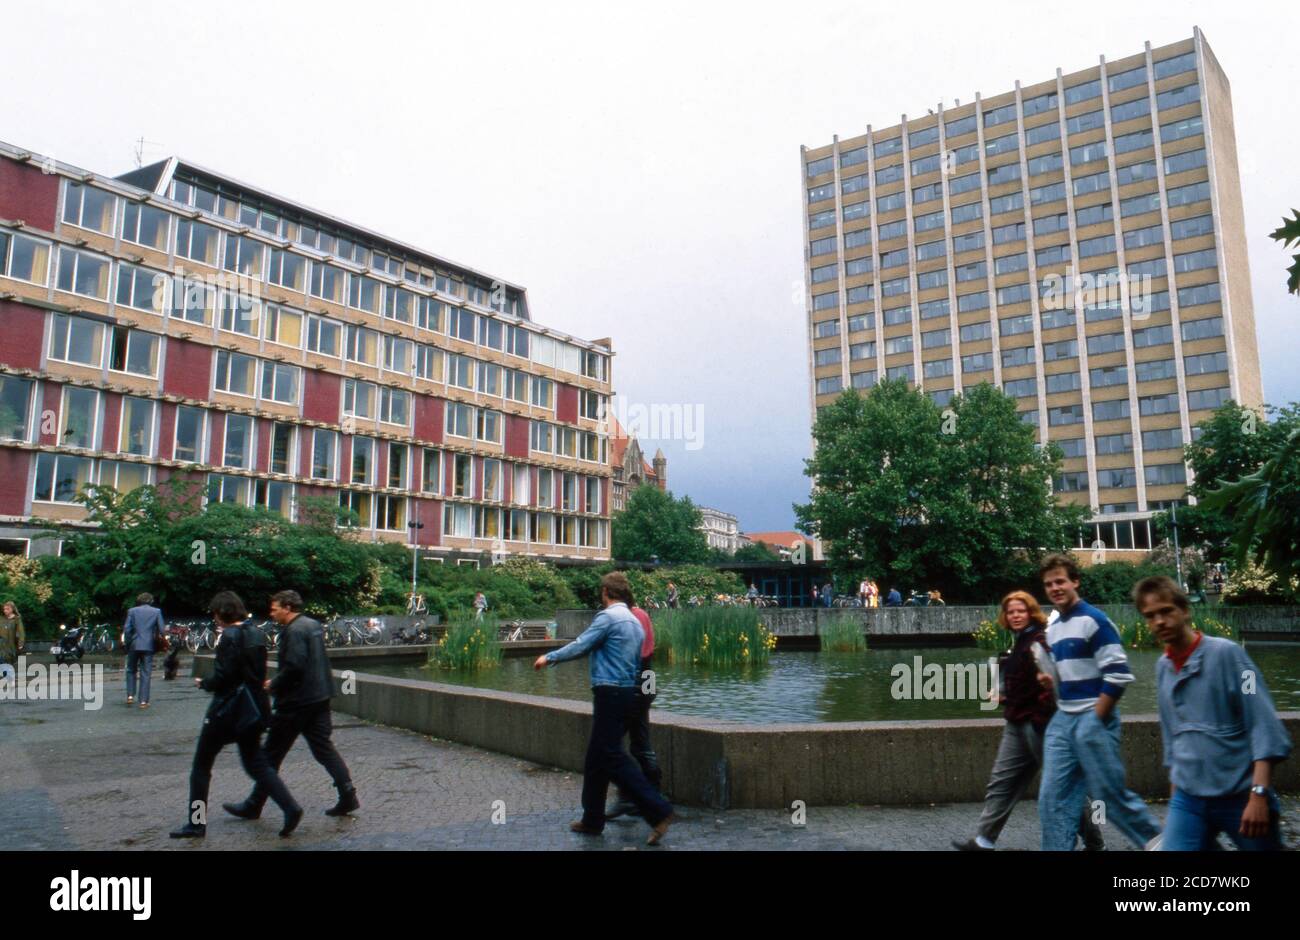 Spaziergang um die Gebäude der Universität in Hamburg, hier Studenten auf ihrem Weg zu ihren Vorlesungen, Deutschland 1988. Stock Photo